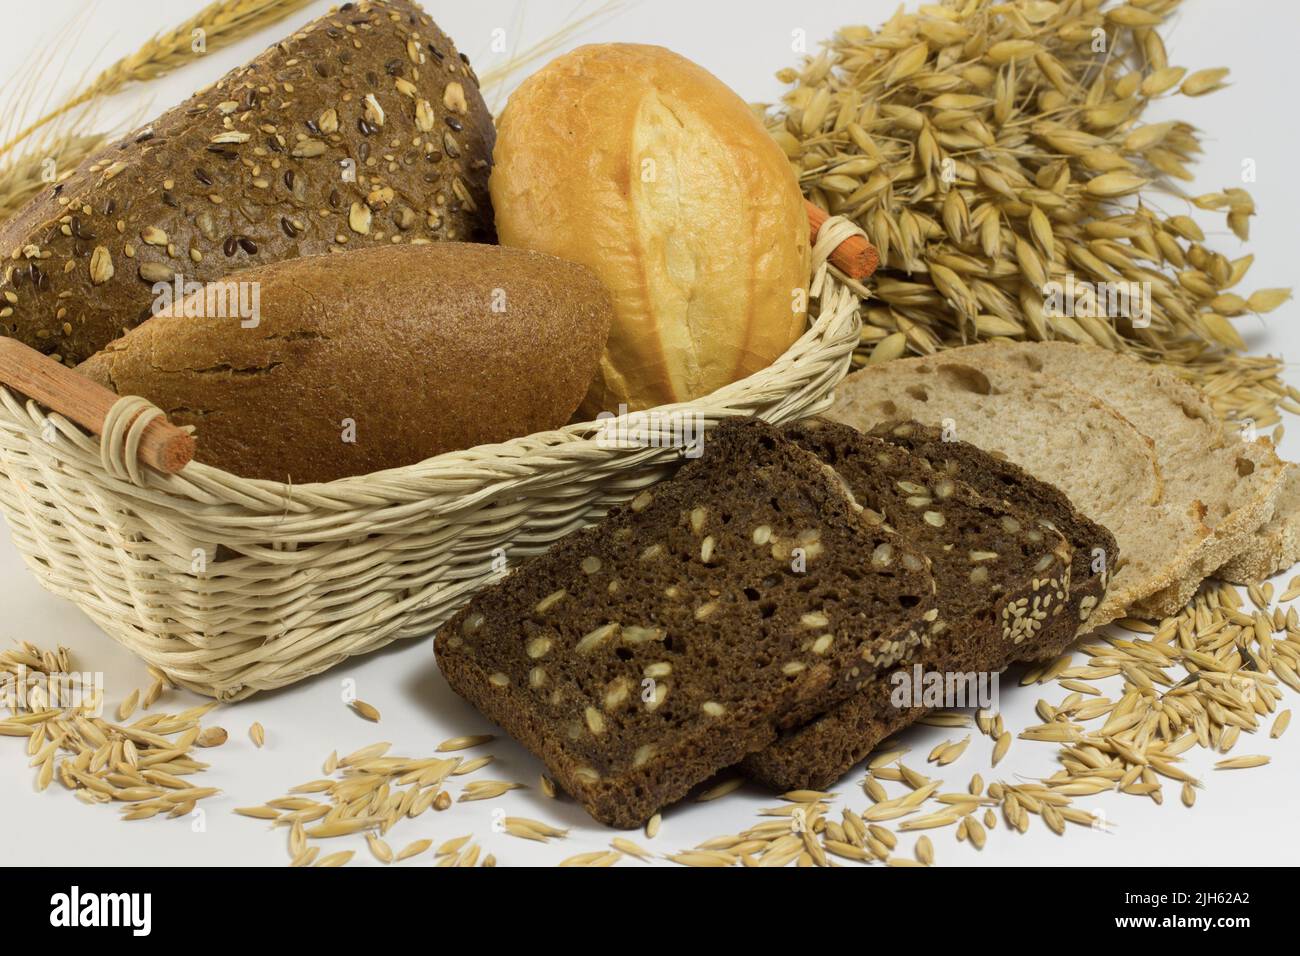 Pancia, pane, pancia con semi in un cestino. Pane nero a fette, grano e avena Foto Stock